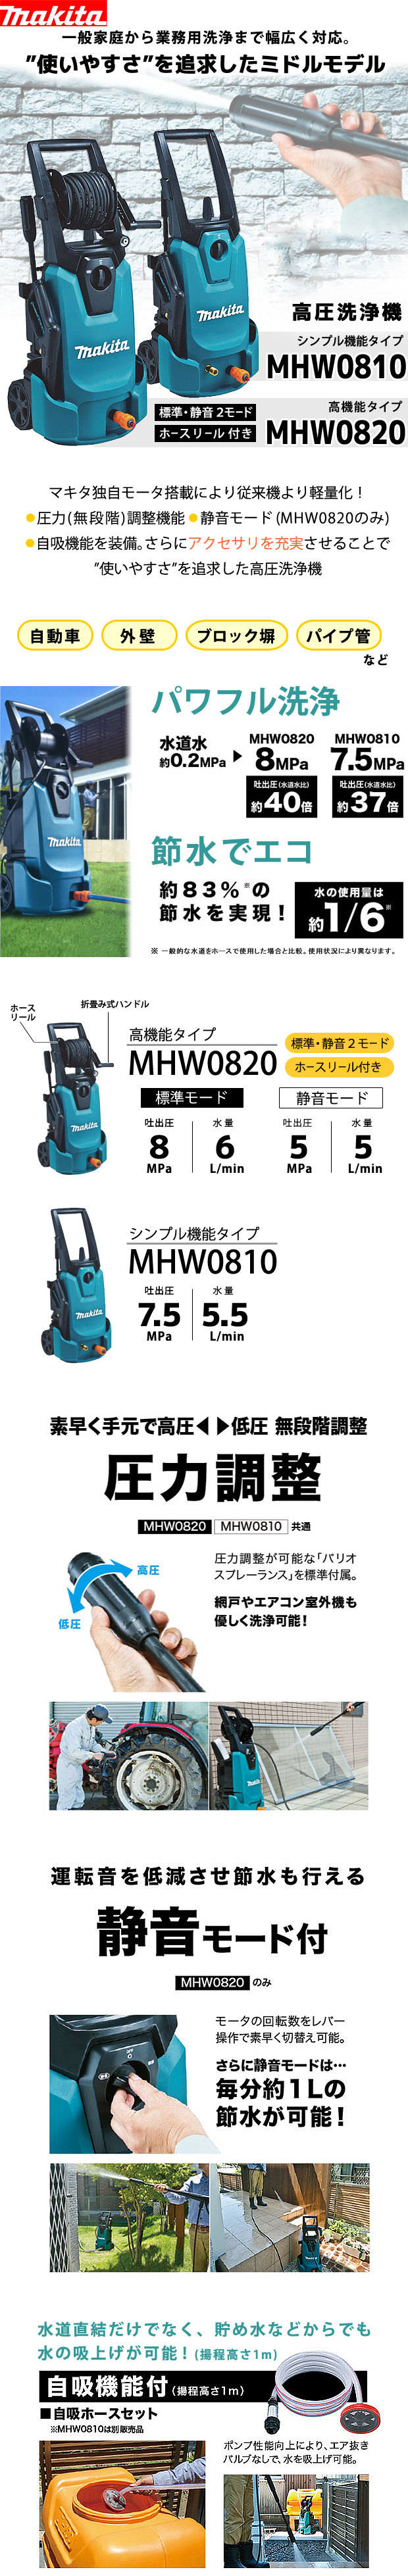 マキタ 高圧洗浄機 MHW0820 / MHW0810 電動工具・エアー工具・大工道具